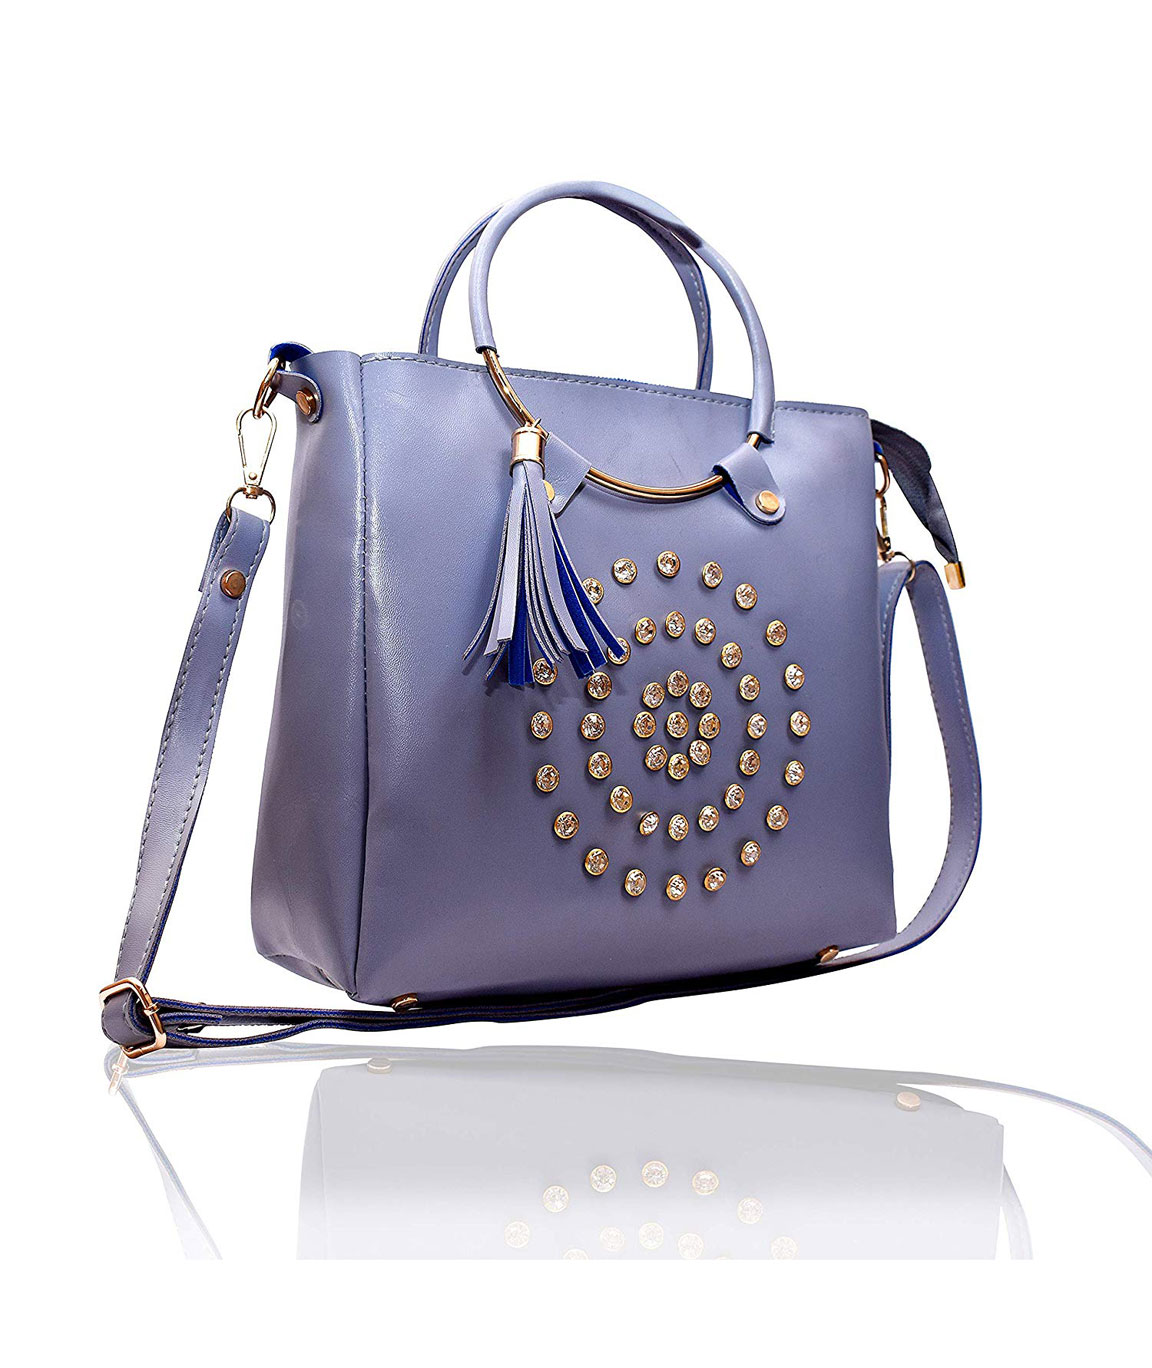 DN Enterprises Latest Trendy Tote Bag/Sling Bag/Handbags for Girls ...